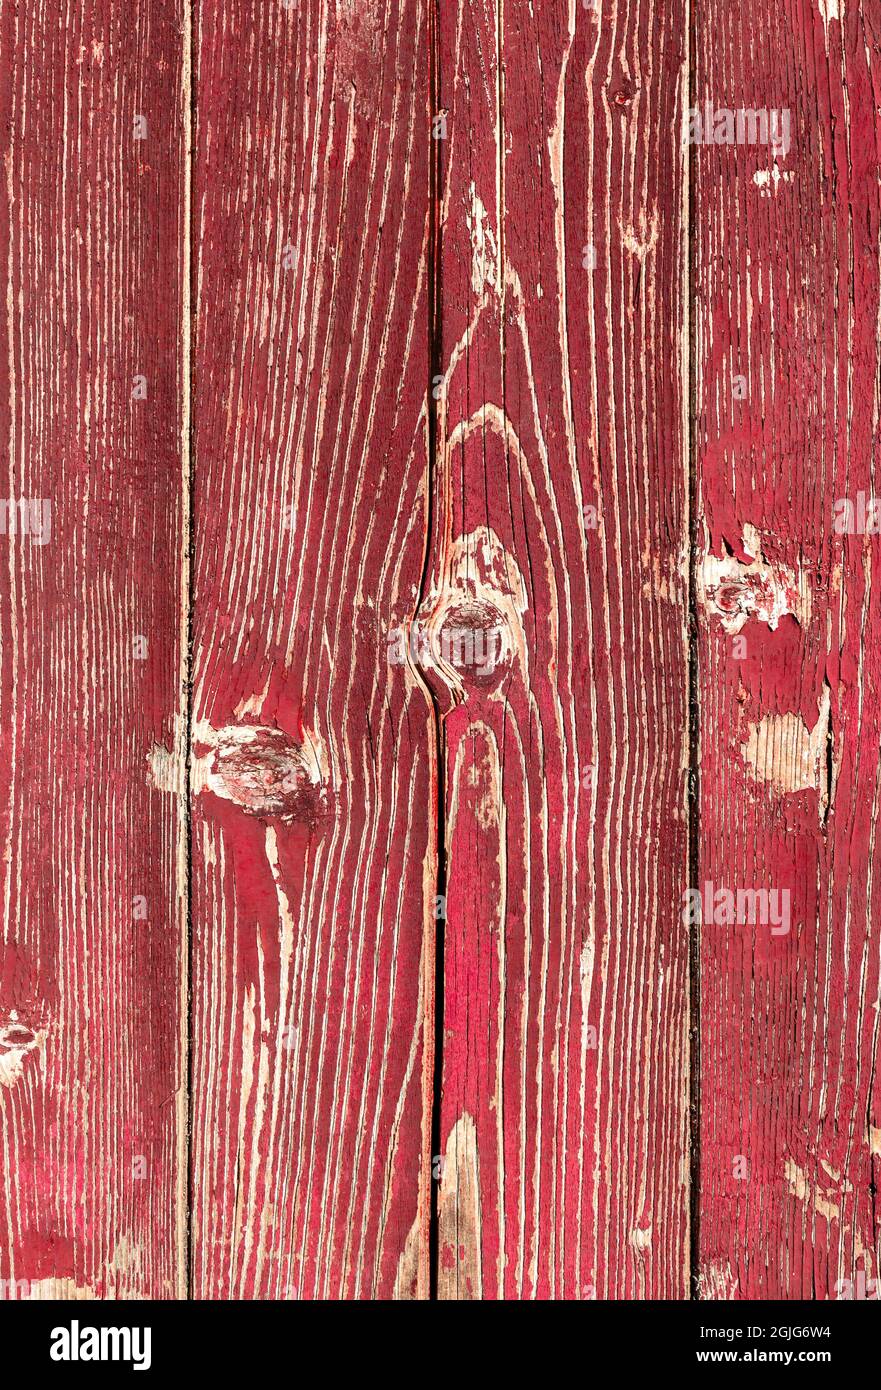 Planches rouges en bois. Arrière-plan composé de planches en bois avec peinture rouge peeling. Banque D'Images